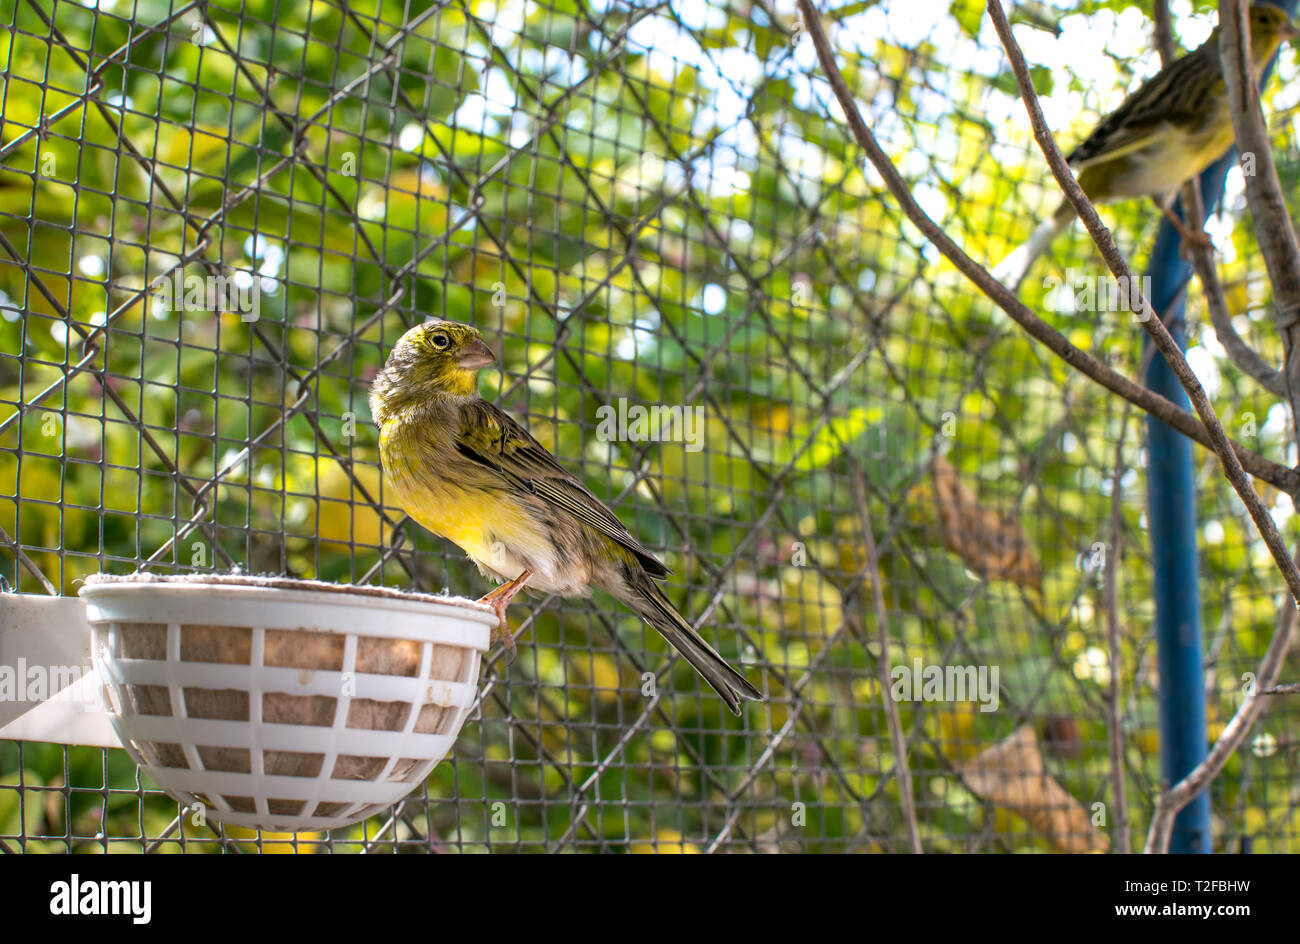 Il Atlantic Bird canarie (Serinus canaria), canarini isola Canarie, uccelli pet appollaiato su un bastone di legno contro gli alberi di limone all'interno di una gabbia in Spagna, 2019. Foto Stock